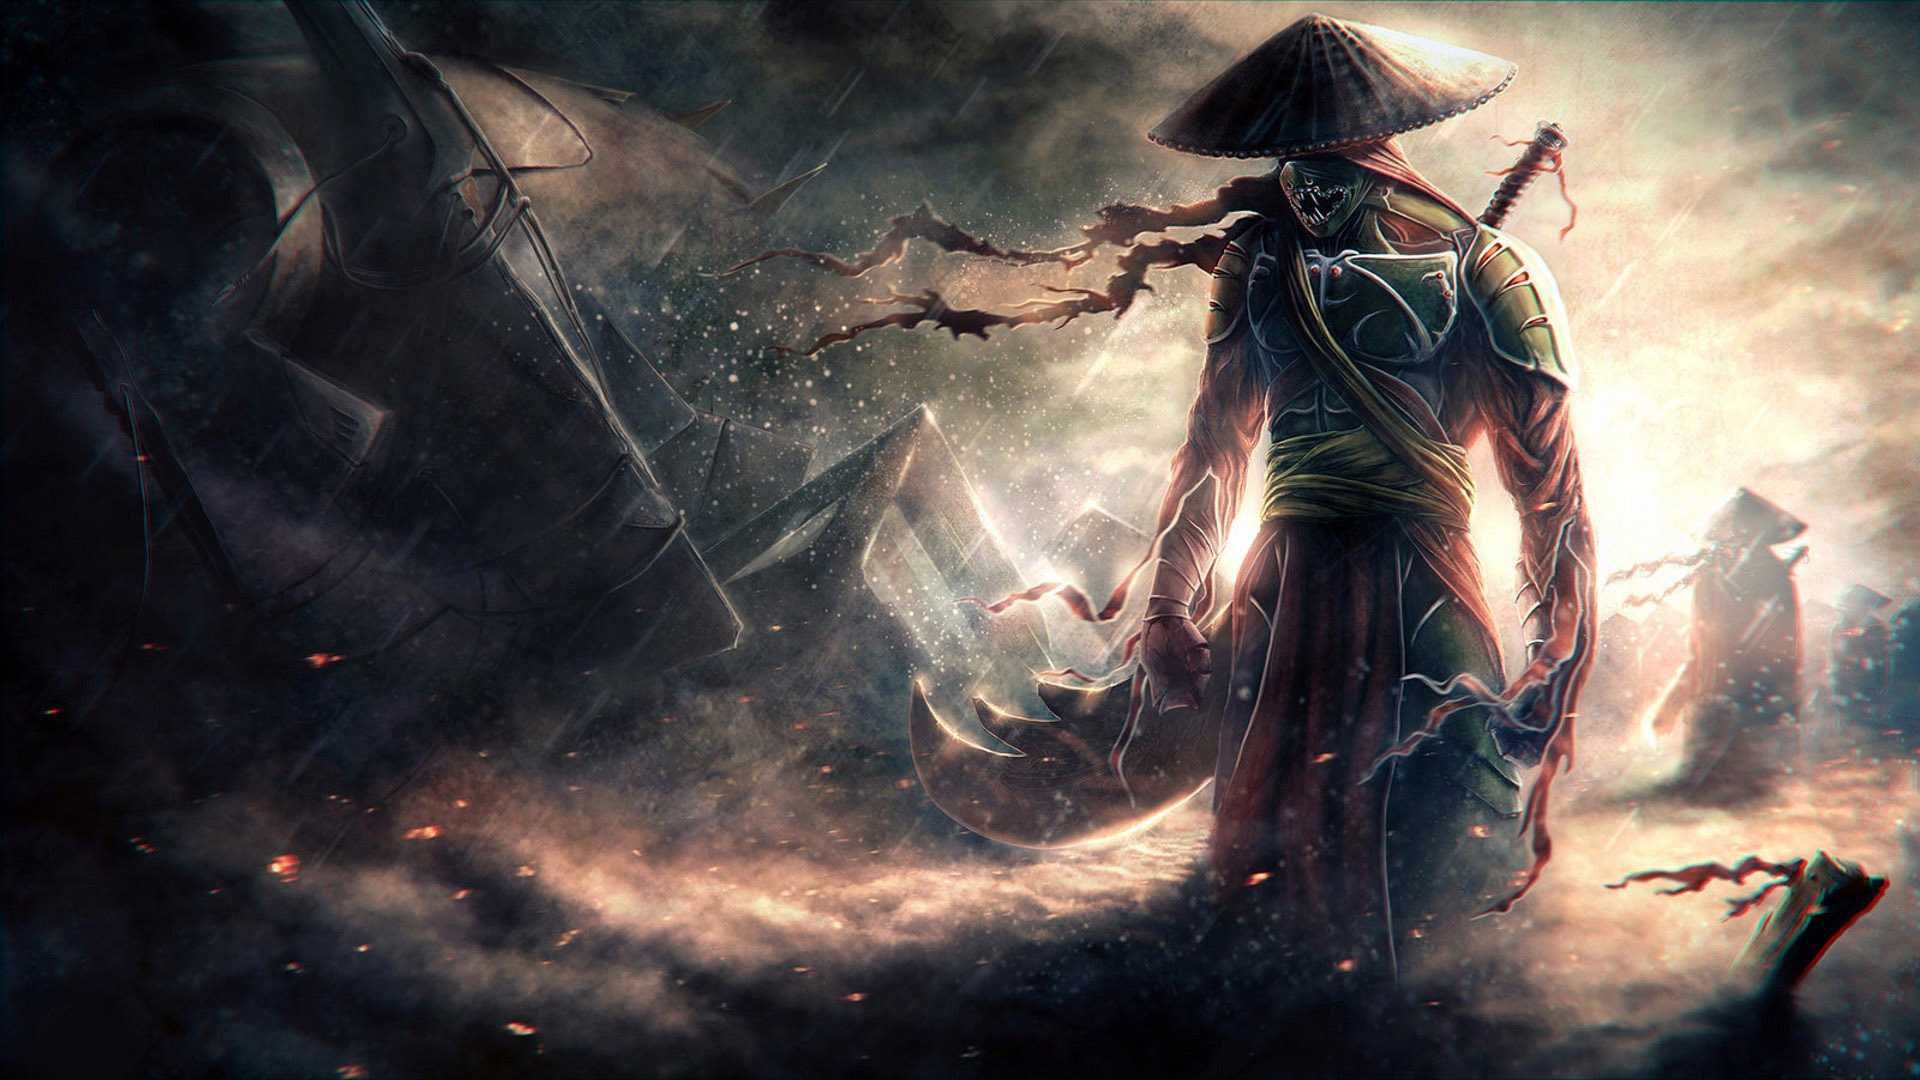 fondo de pantalla de guerrero samurai,juego de acción y aventura,cg artwork,demonio,ilustración,composición digital